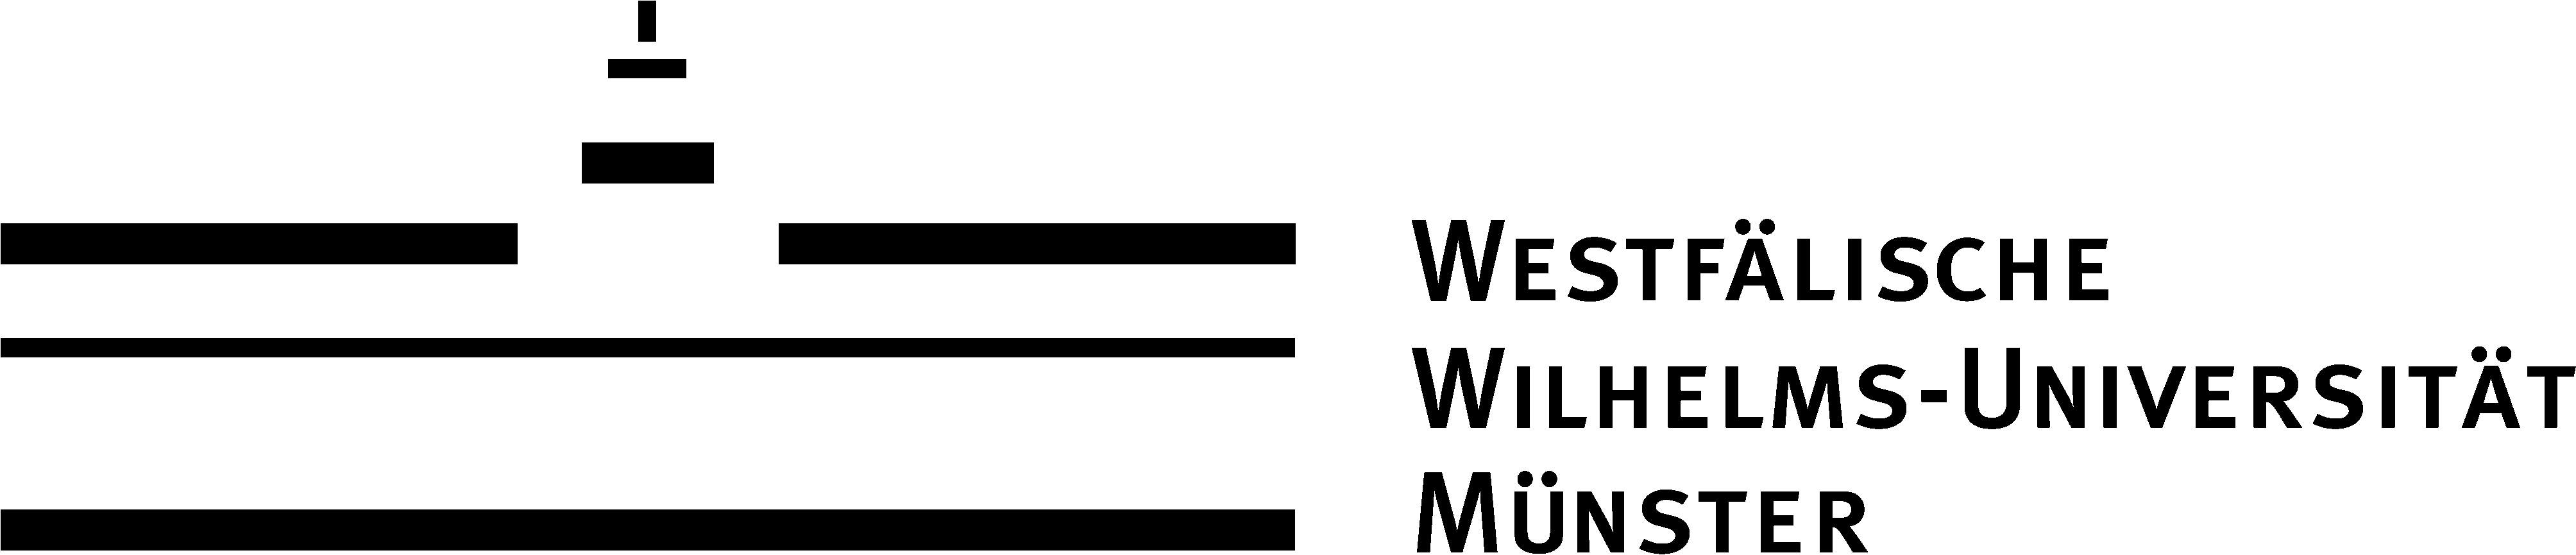 Logo Muenster.jpg